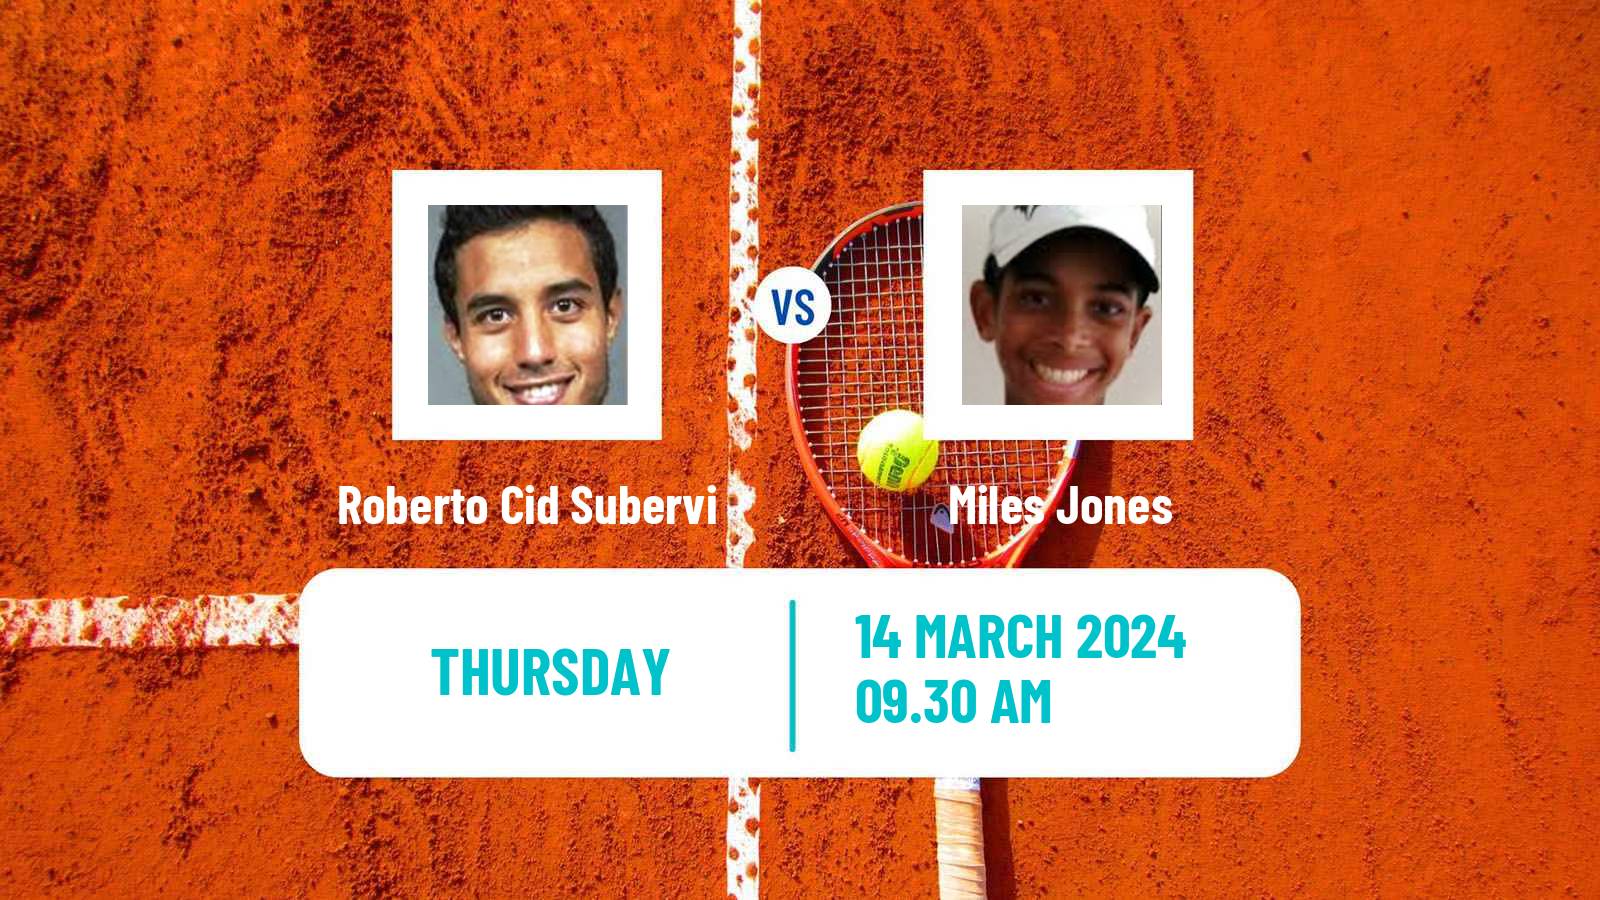 Tennis ITF M25 Santo Domingo 2 Men Roberto Cid Subervi - Miles Jones